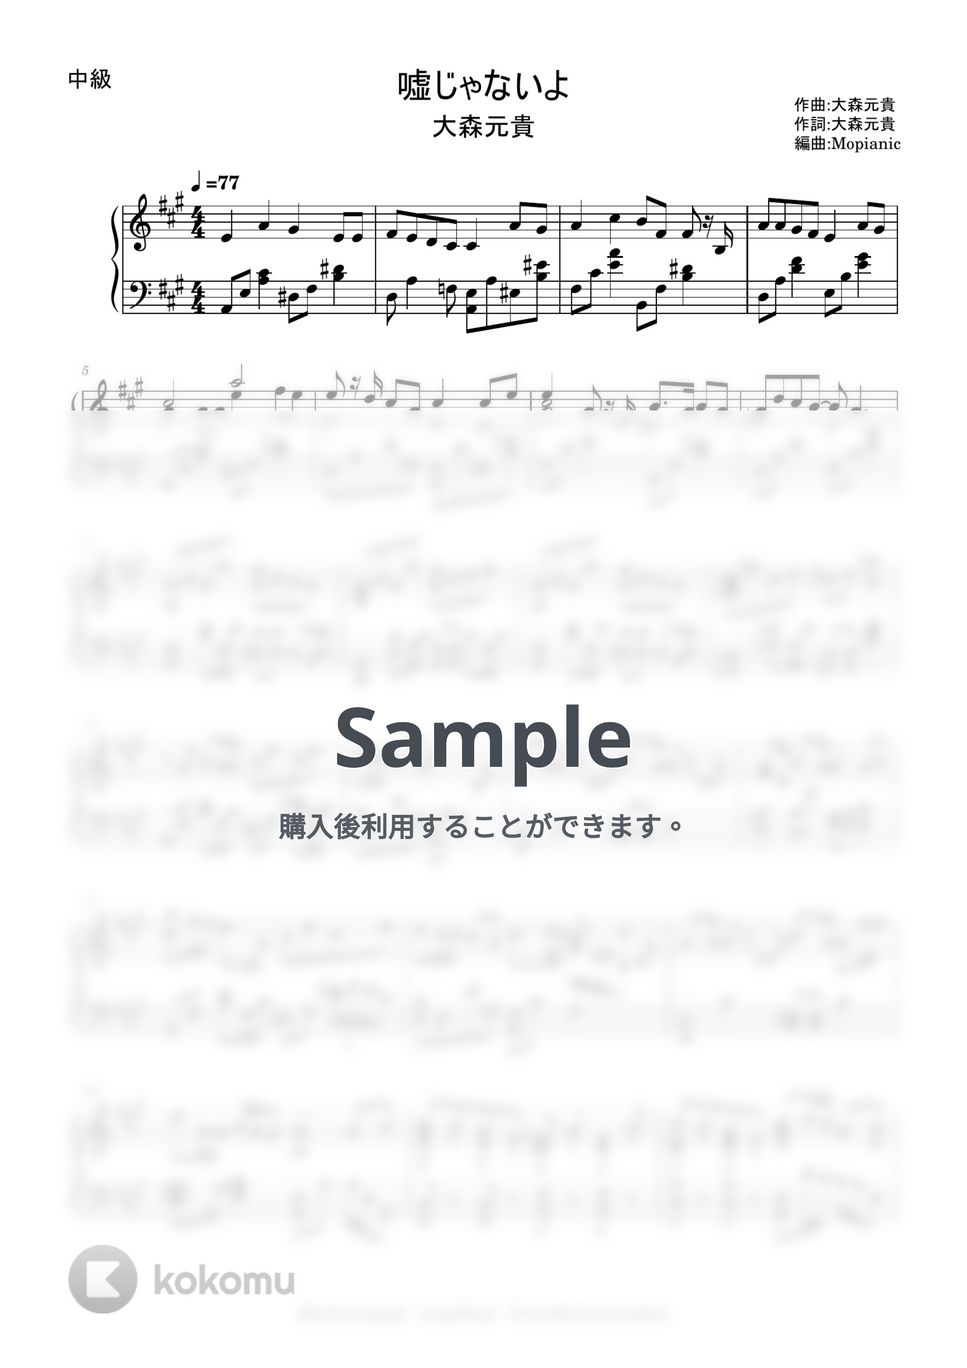 Mrs. GREEN APPLE - 嘘じゃないよ (intermediate, piano) by Mopianic